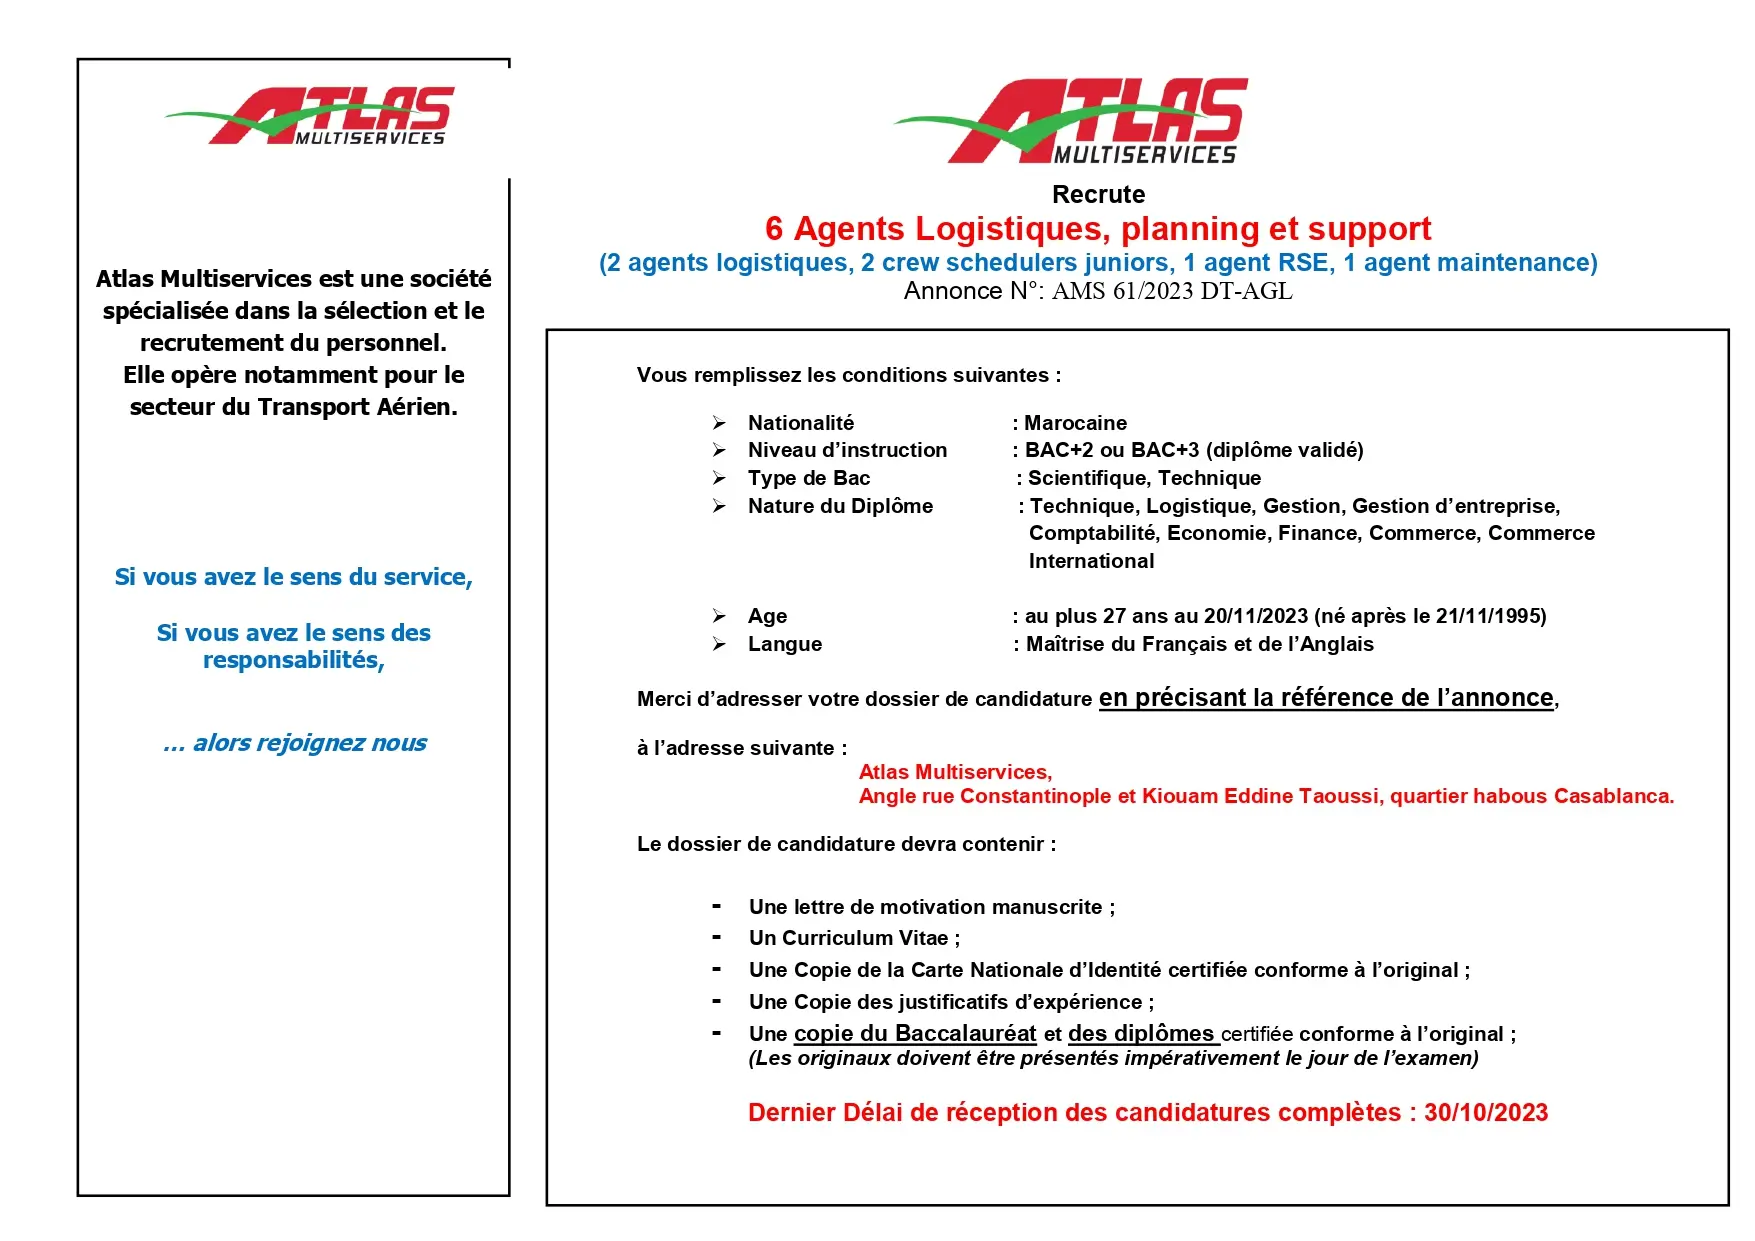 Atlas Multiservices recrute des Agents Logistiques